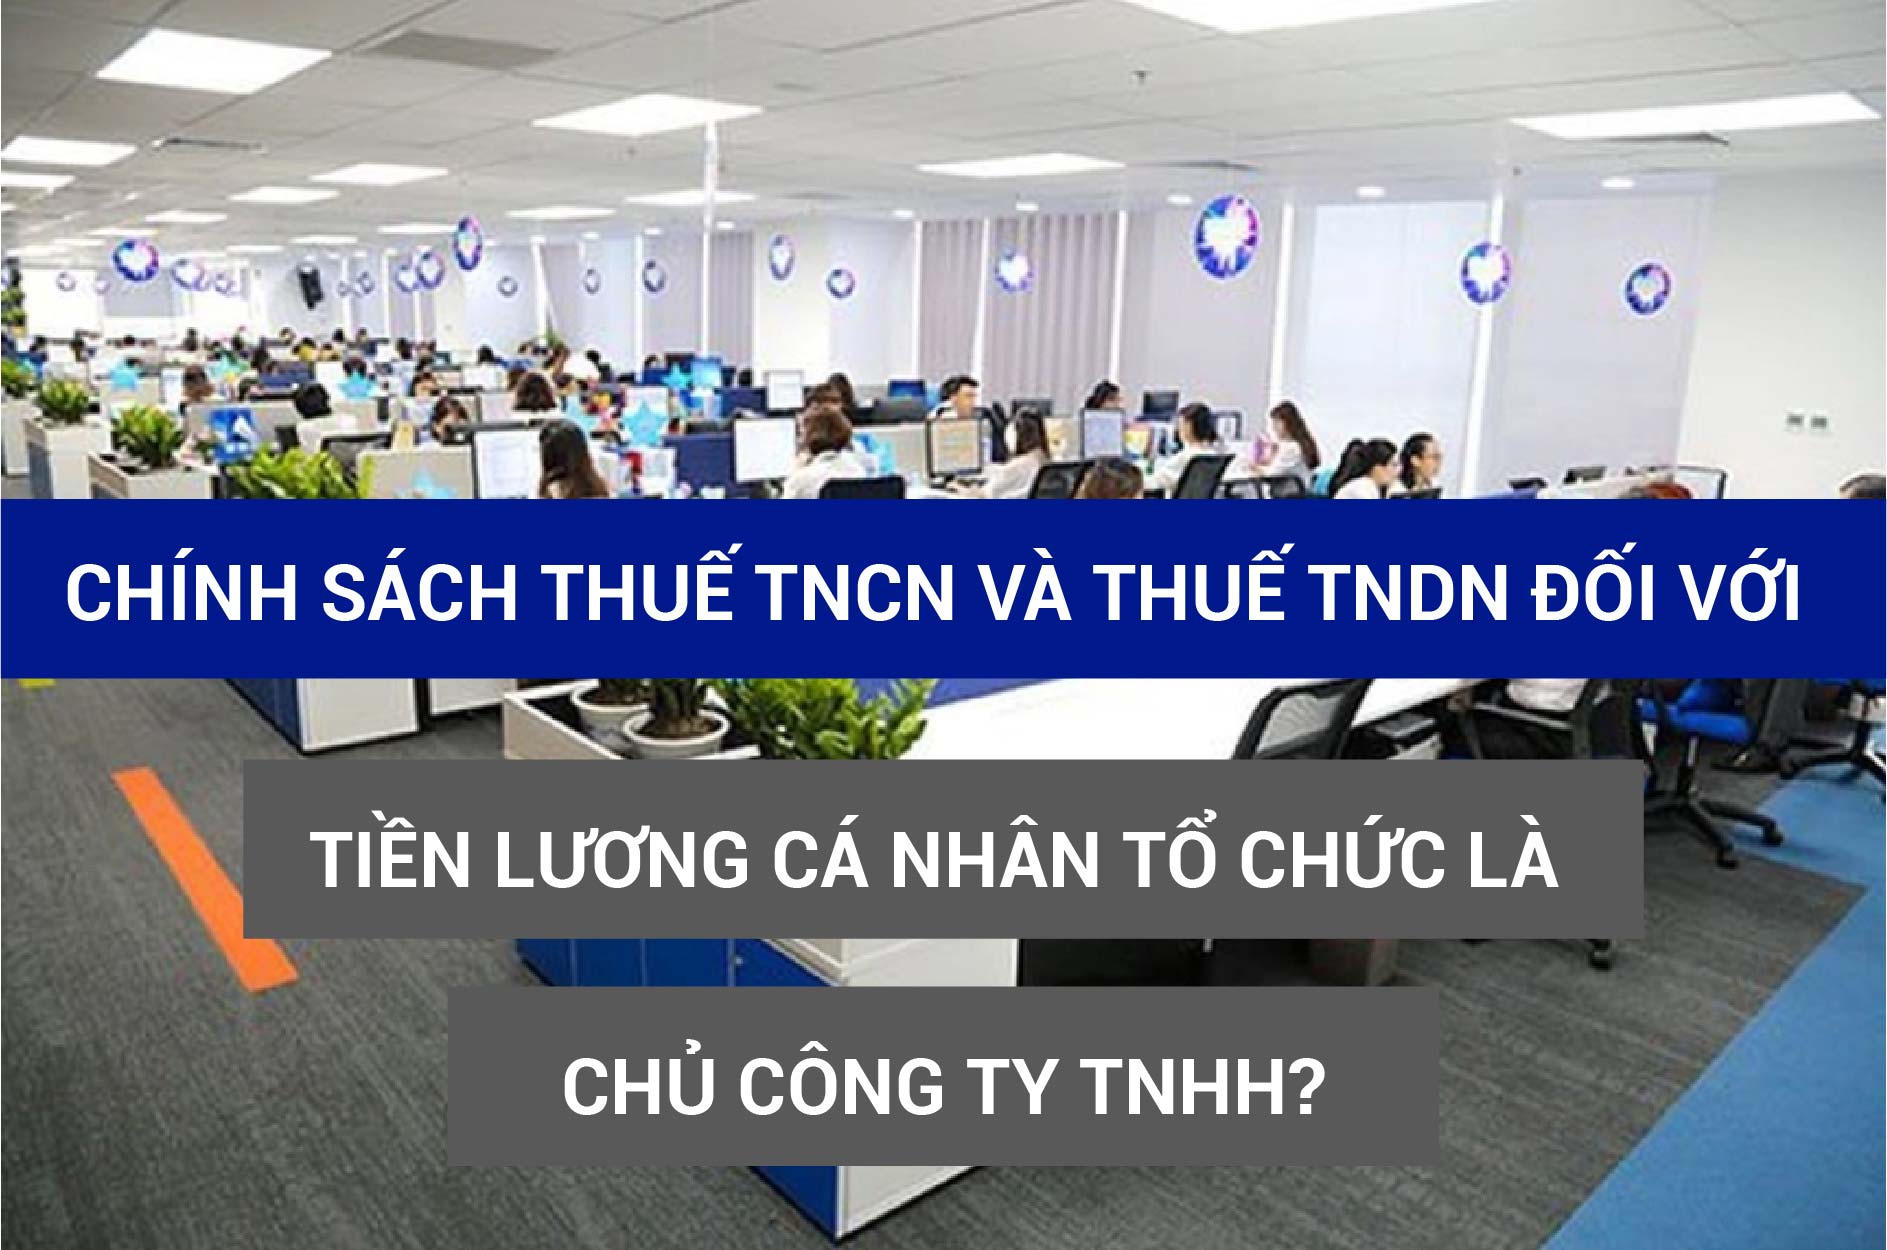 Chính sách thuế TNCN và thuế TNDN đối với tiền lương cá nhân tổ chức là chủ công ty TNHH?